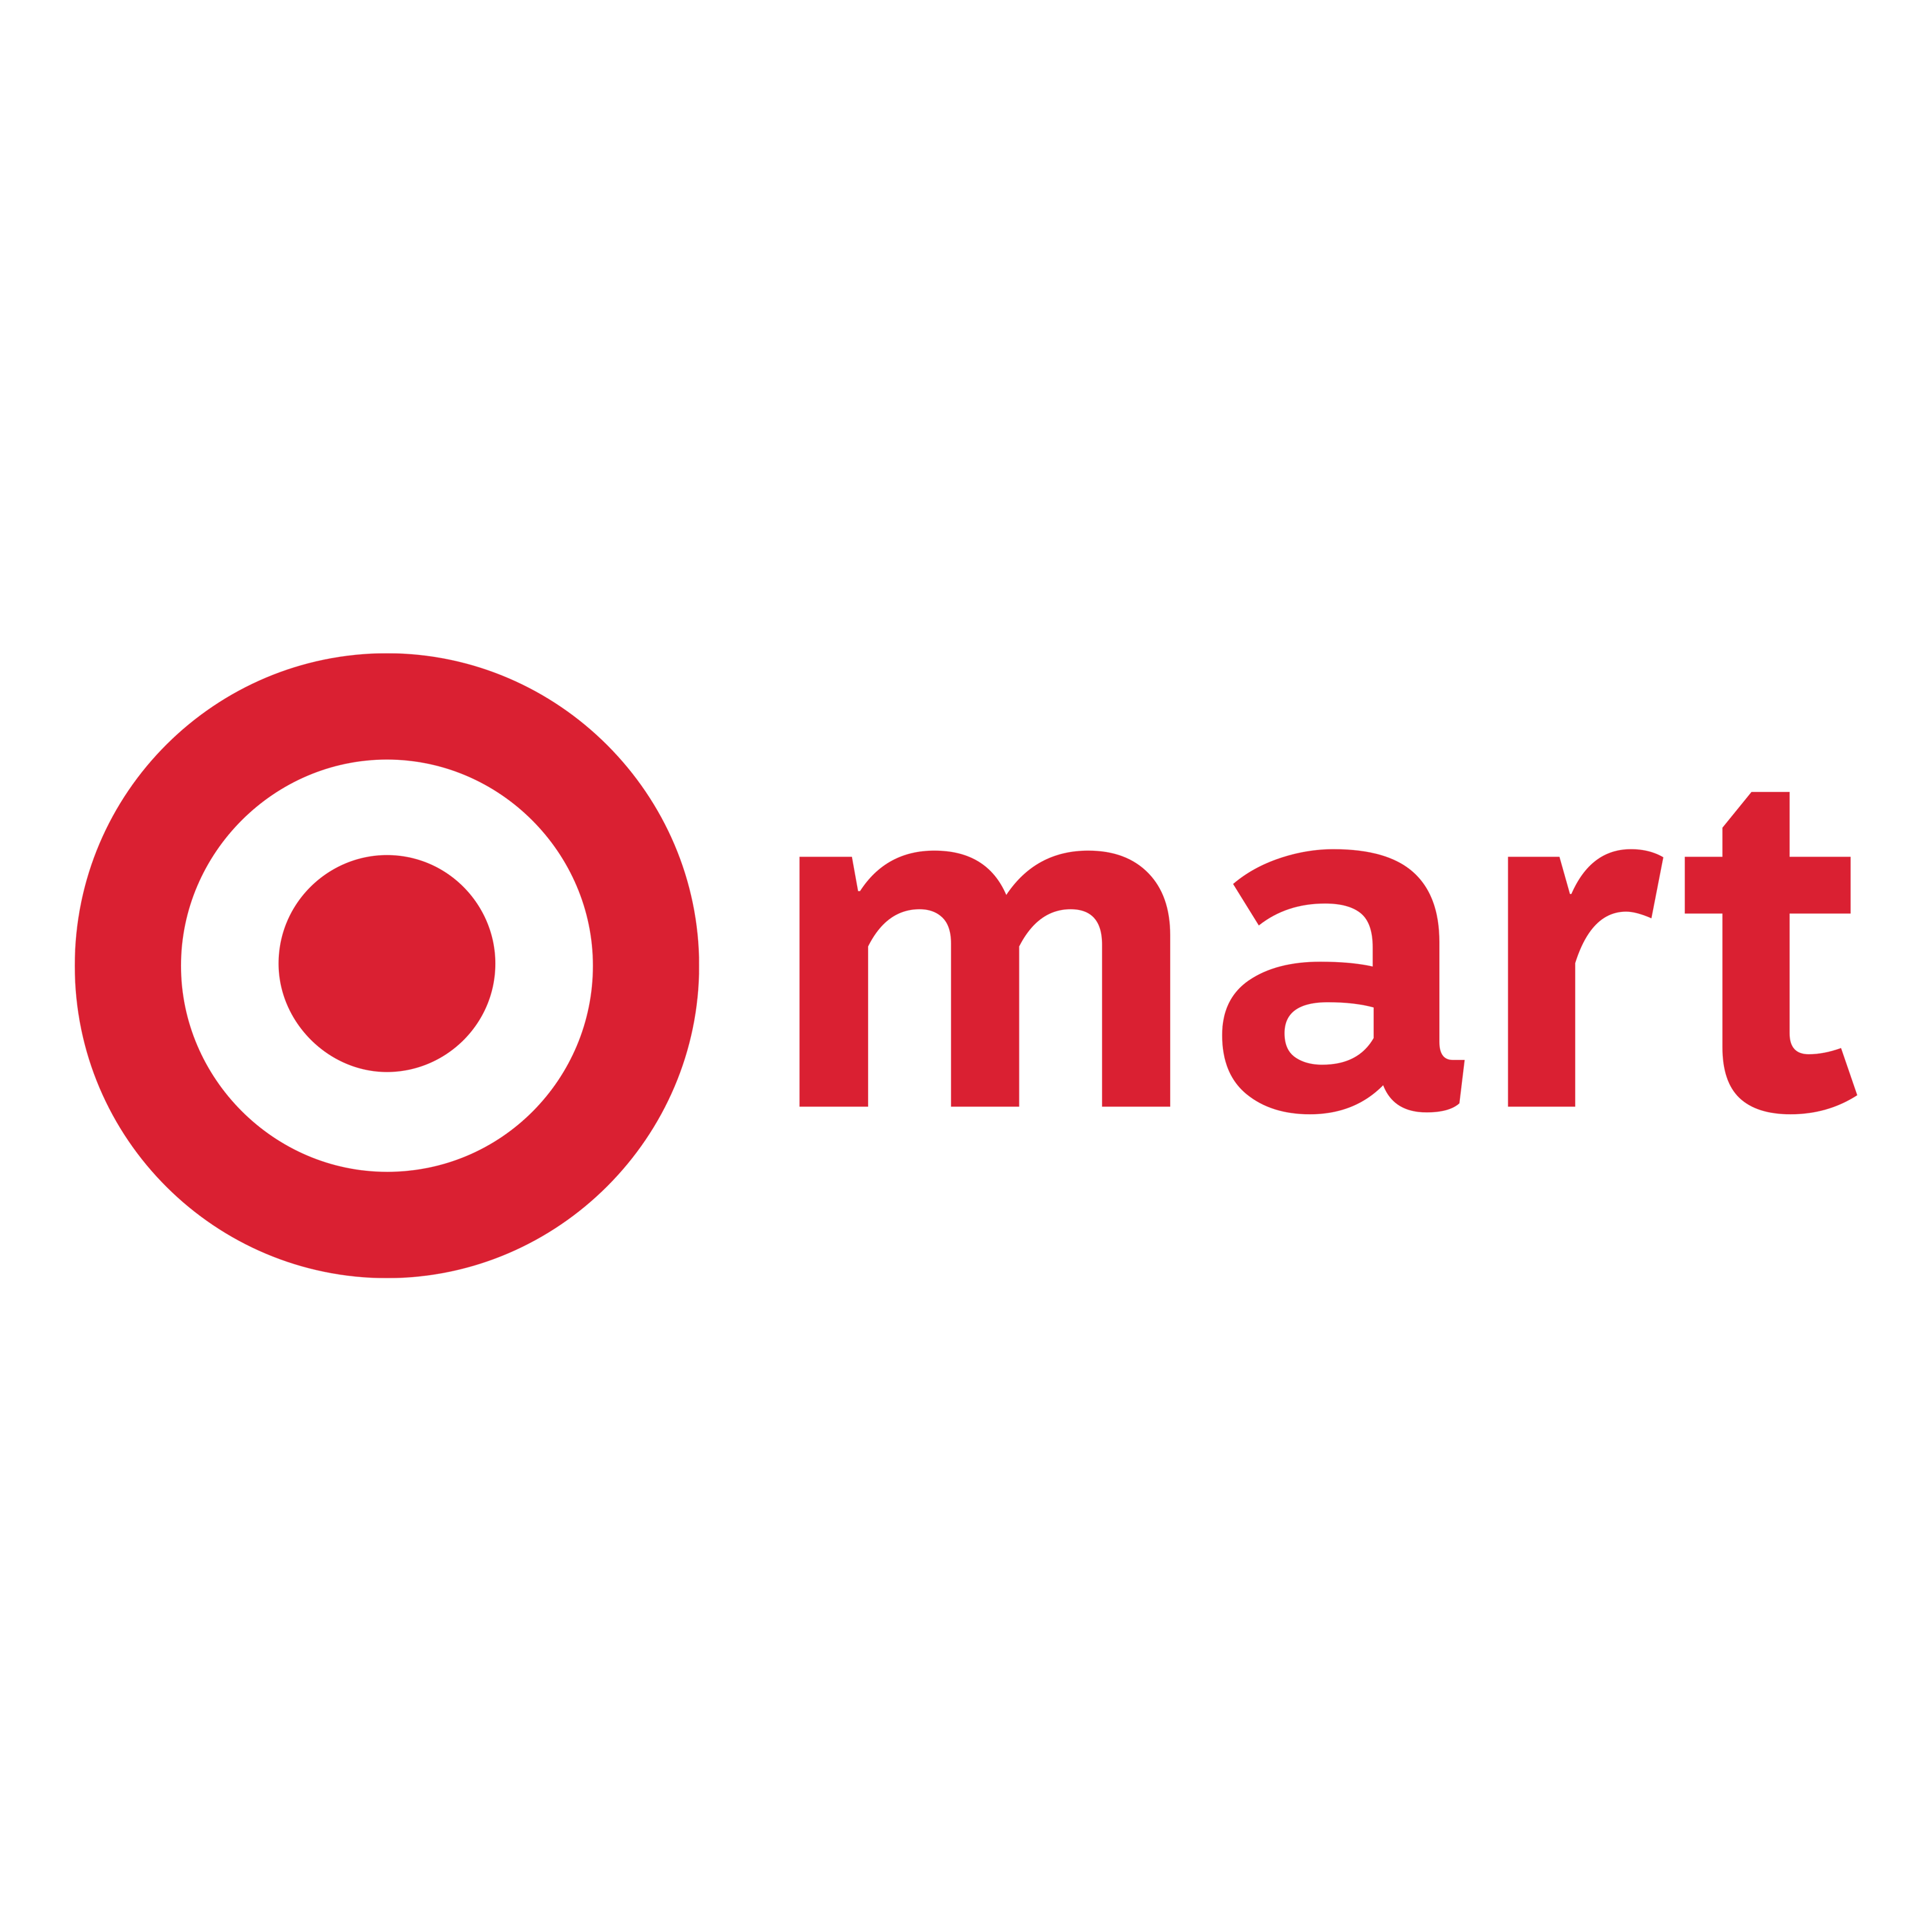 Target Mart Logo Transparent Image